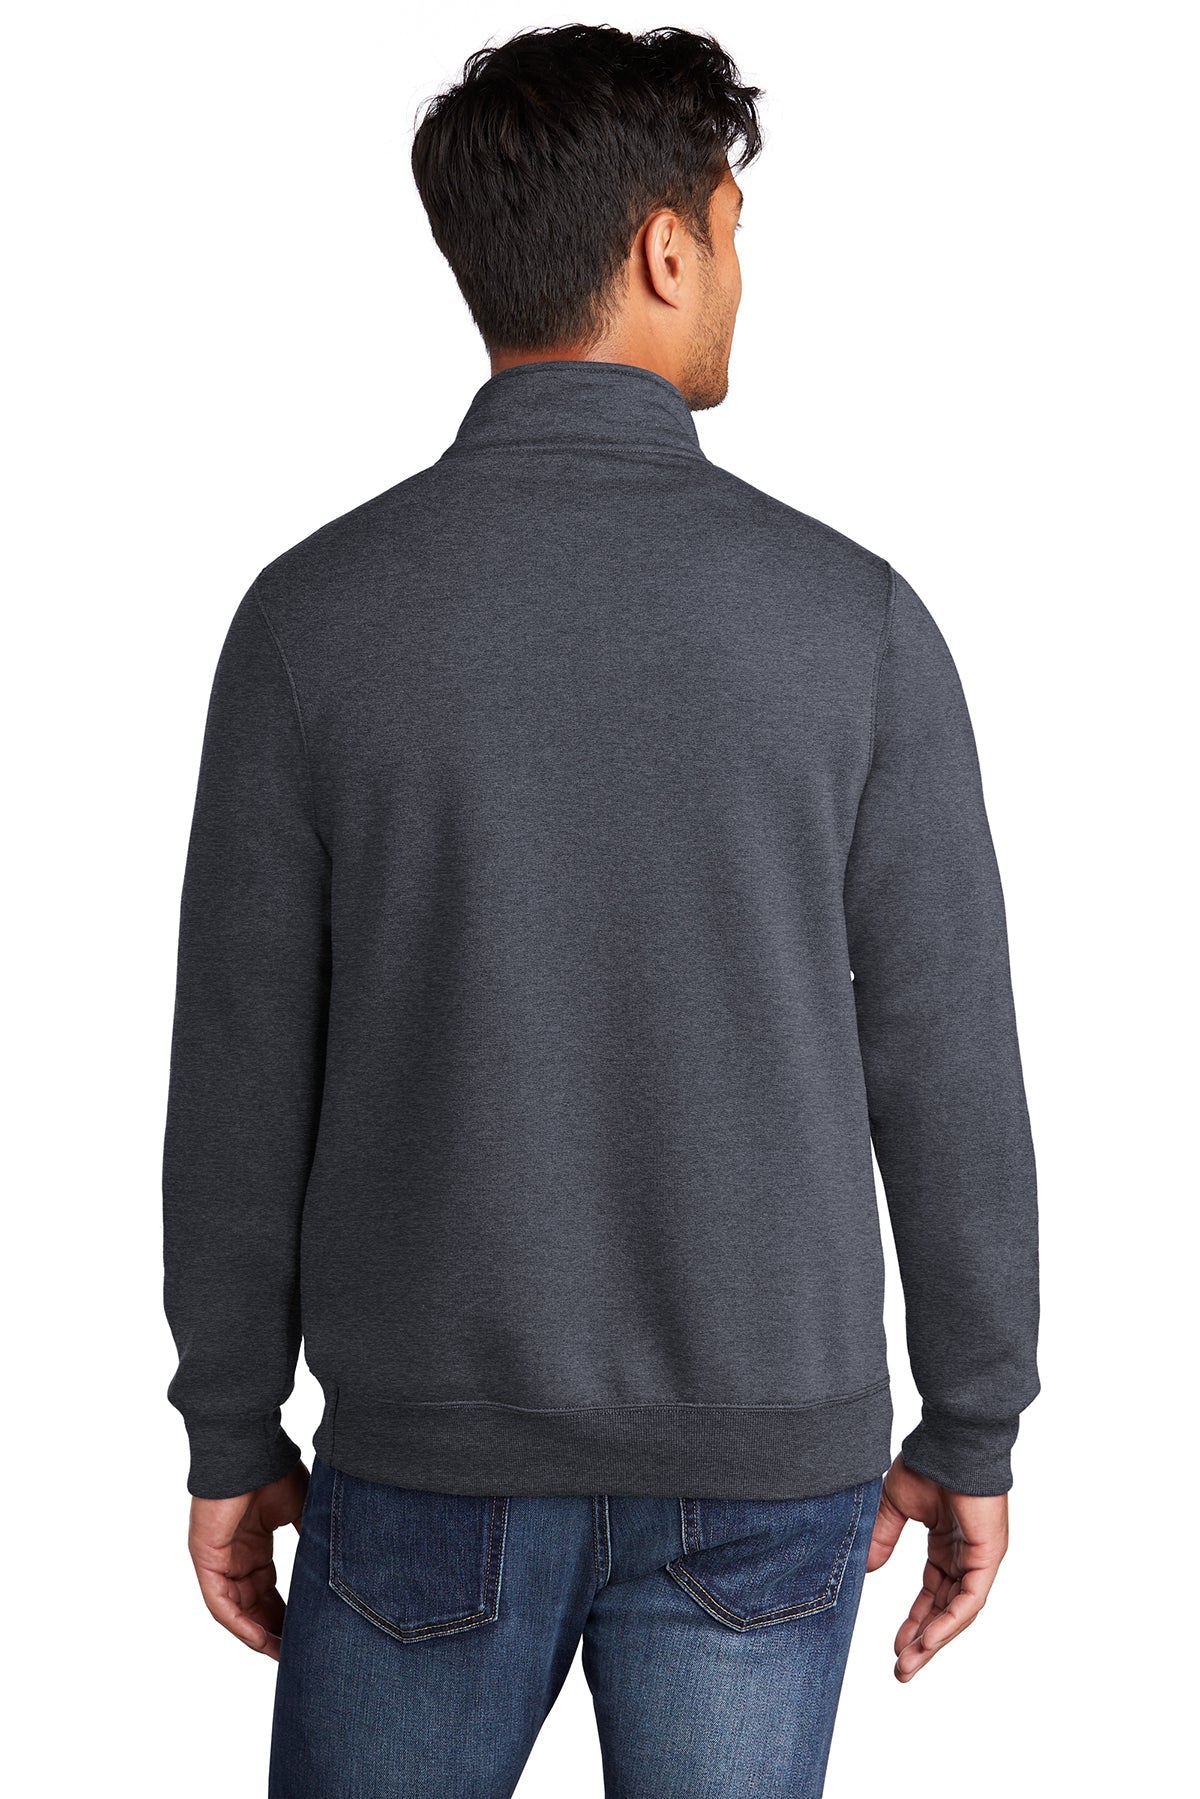 Port & Company Core Fleece 1/4-Zip Pullover Sweatshirt PC78Q Heather Navy